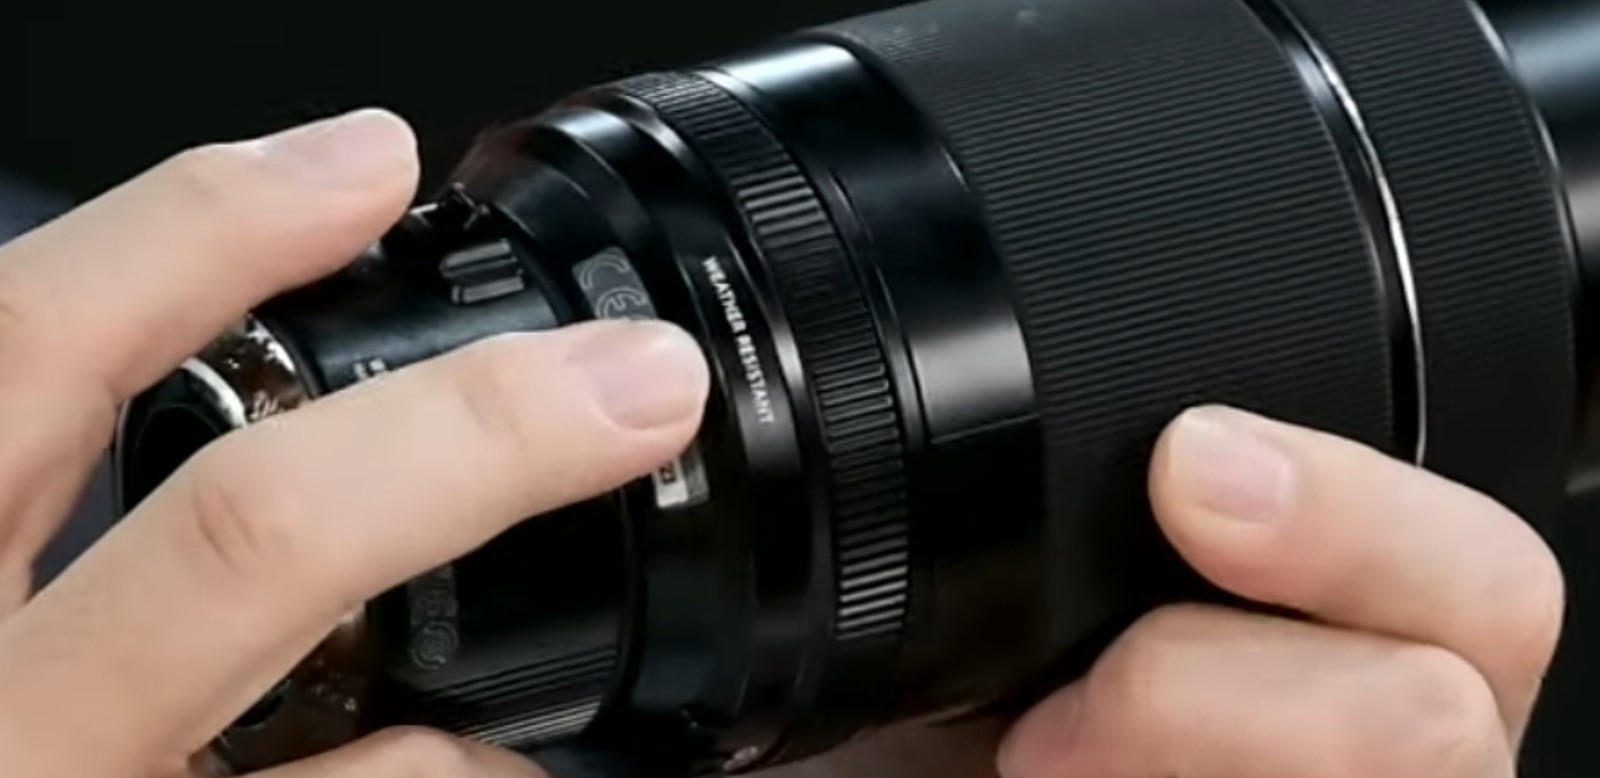 Ống kính Fujinon XF 70-300mm F4-5.6 sẽ có kích thước filter 67mm